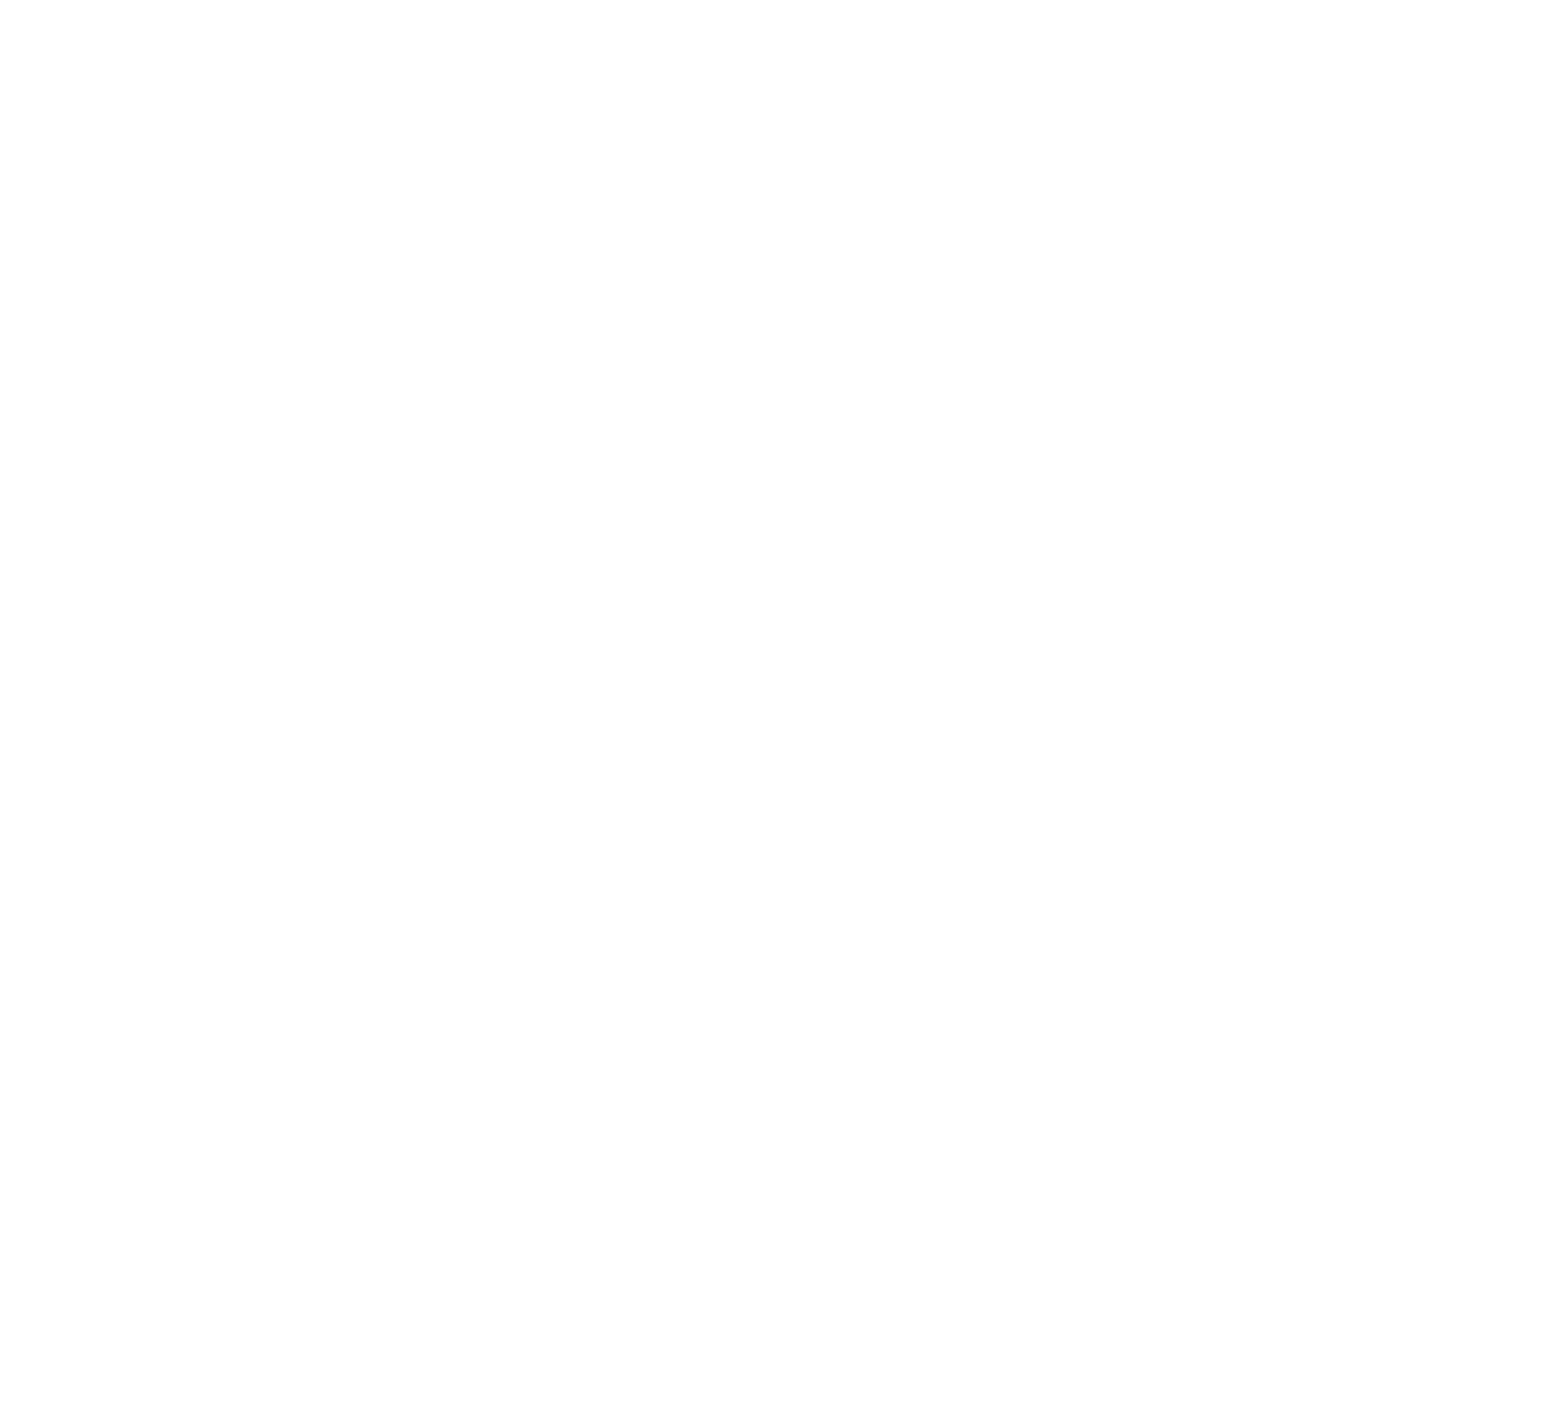 Tigo Energy logo for dark backgrounds (transparent PNG)